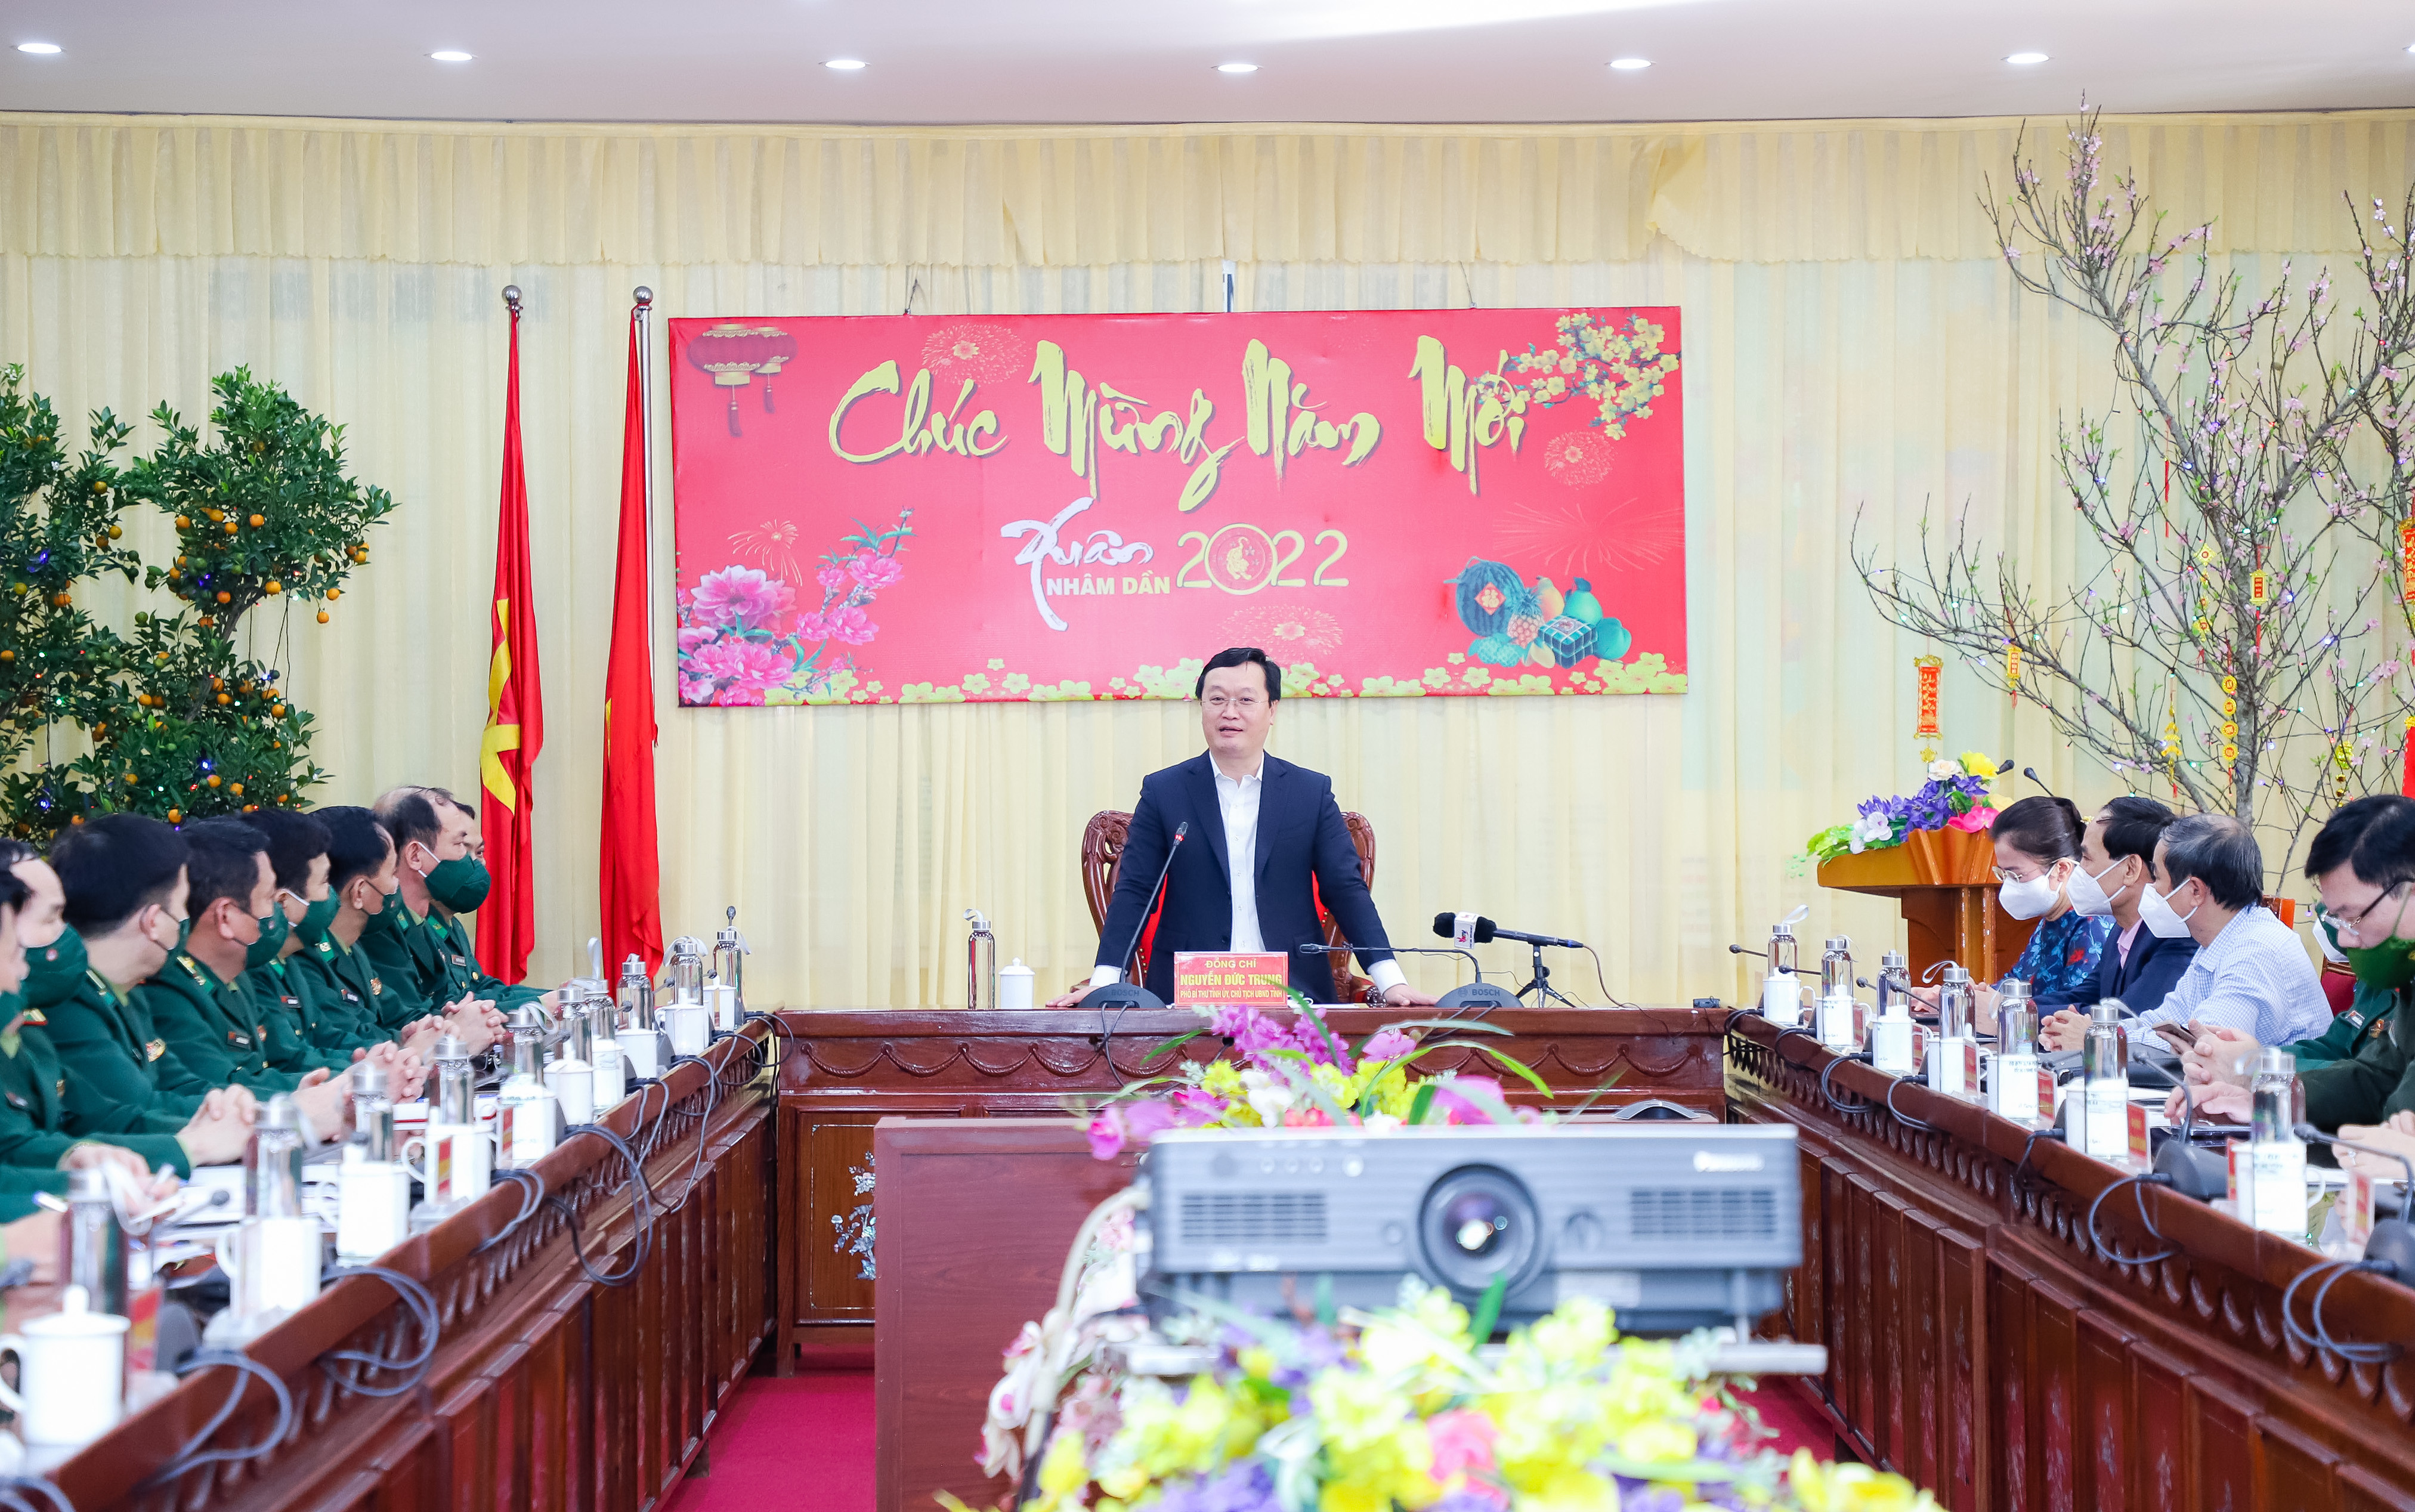 Đồng chí Nguyễn Đức Trung - Chủ tịch UBND tỉnh phát biểu tại chương trình. Ảnh: Phạm Bằng